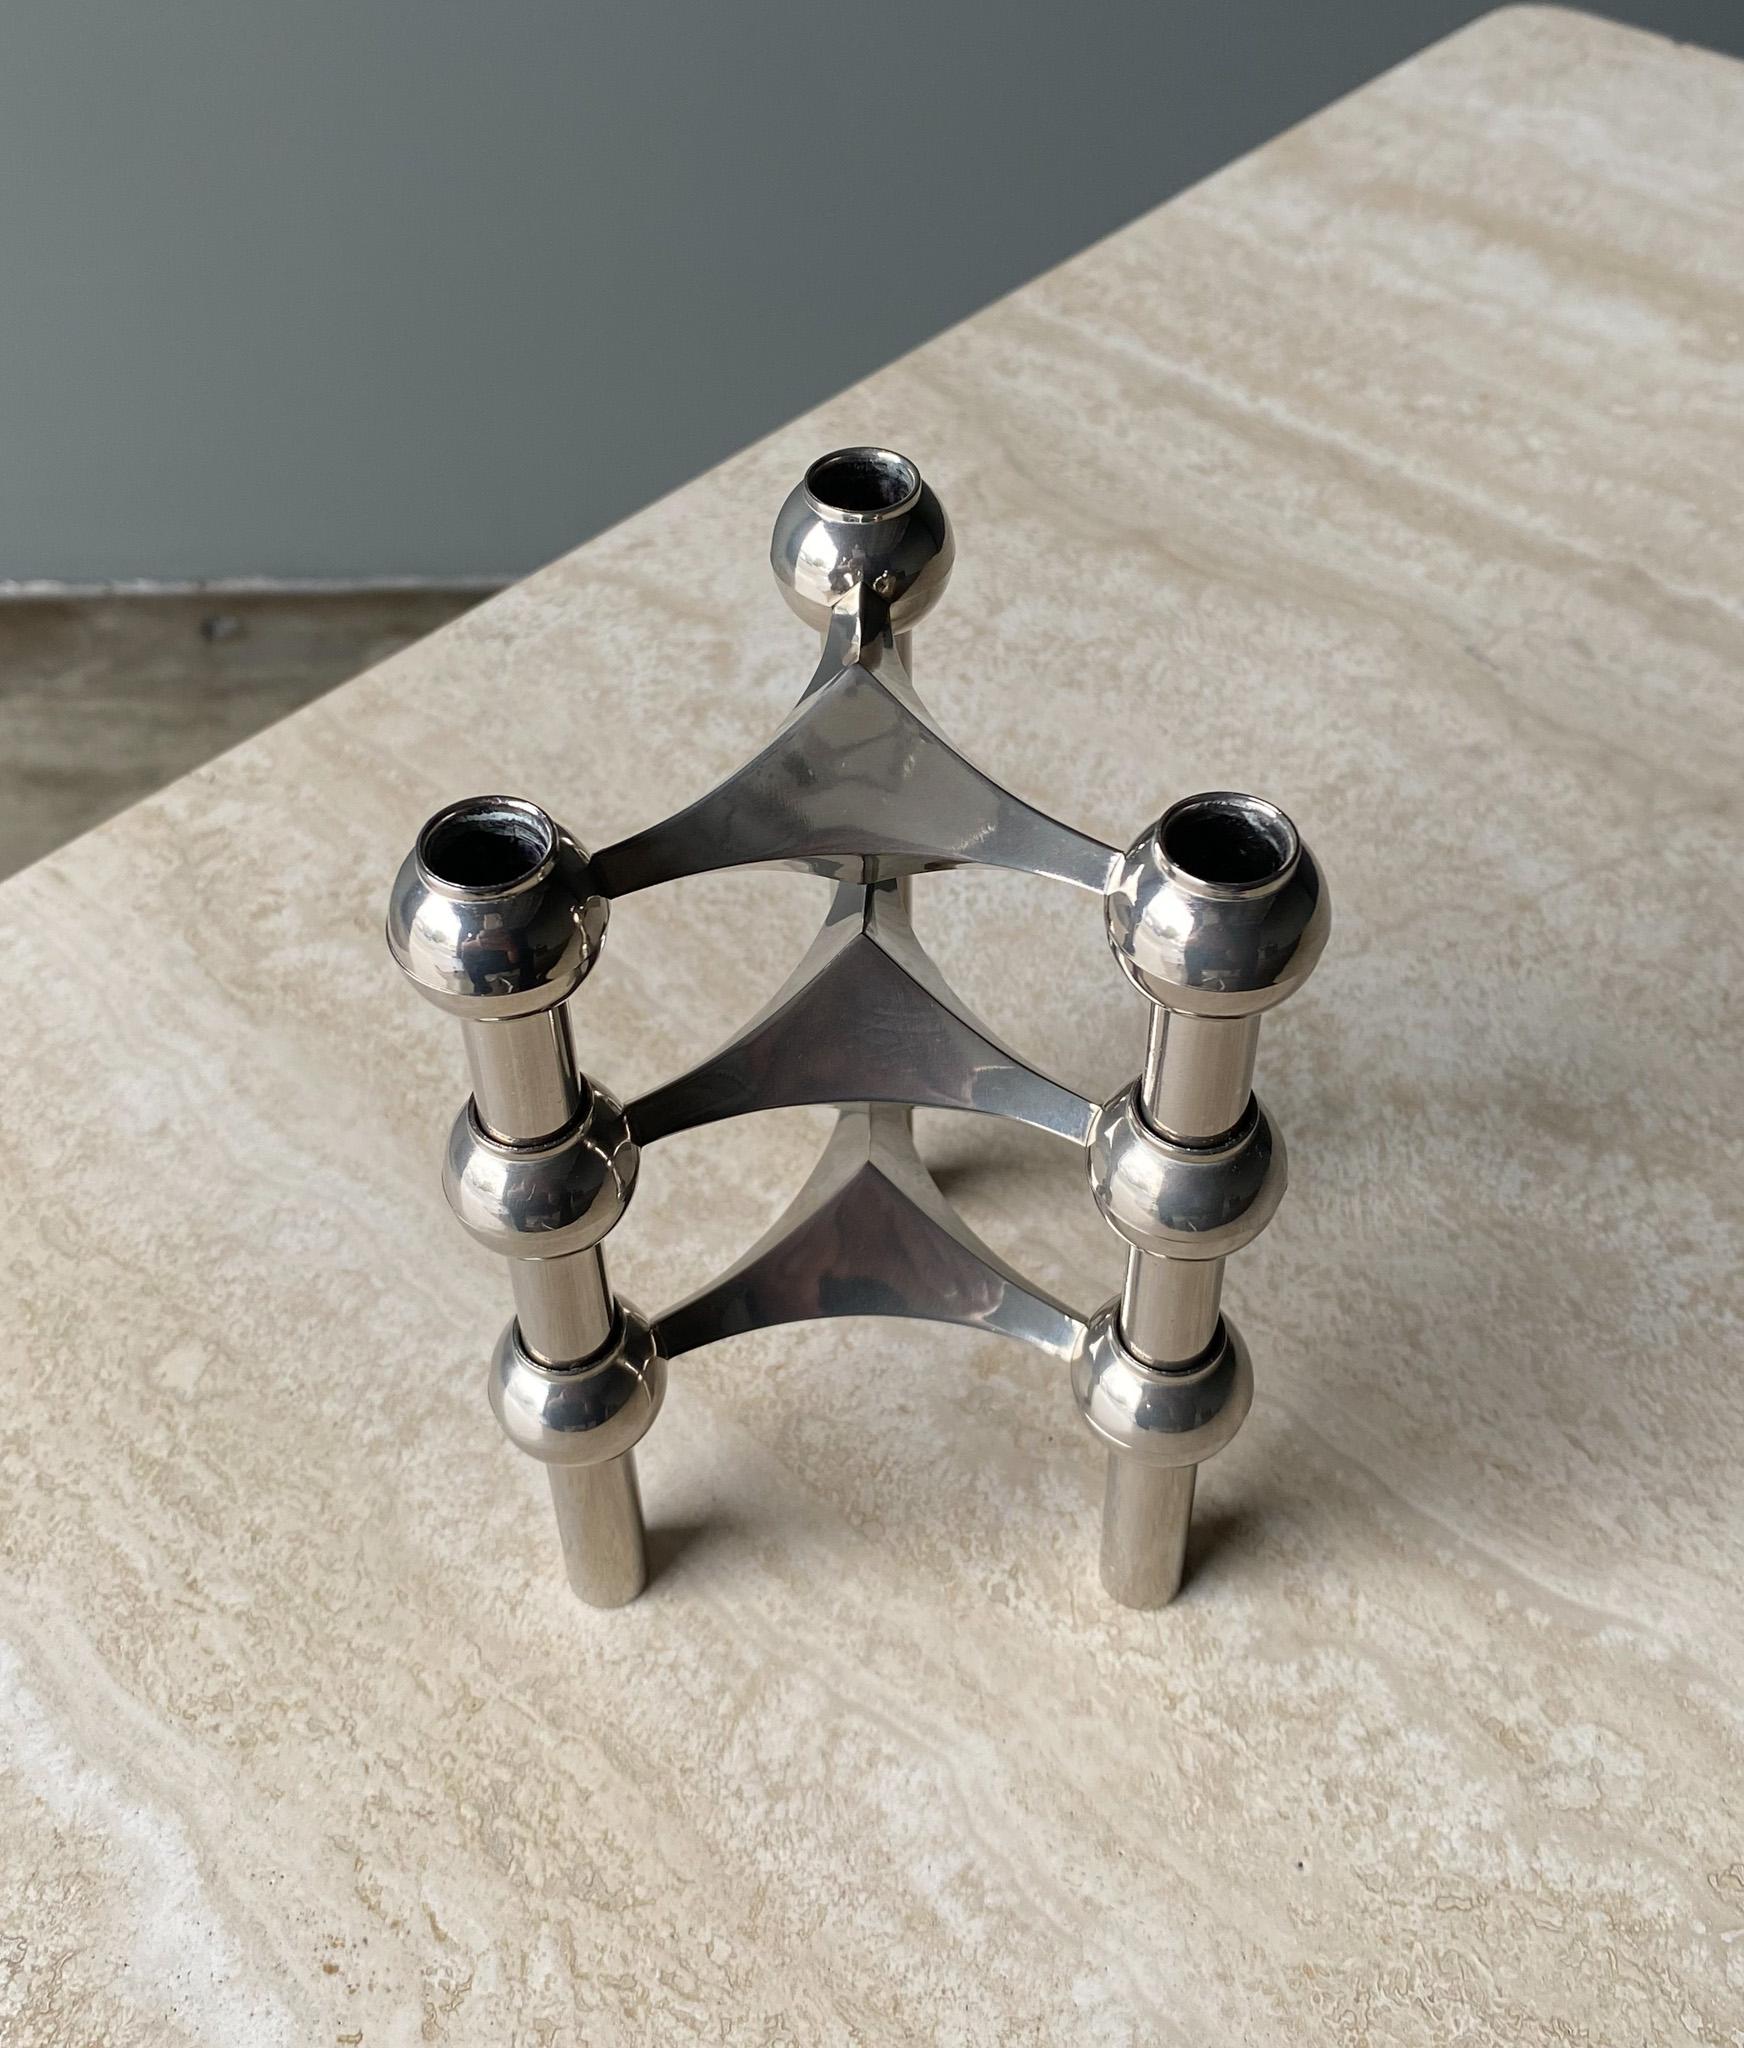 Stoff Nagel Candleholder Designed by Werner Stoff for Metalworker Hans Nagel 6